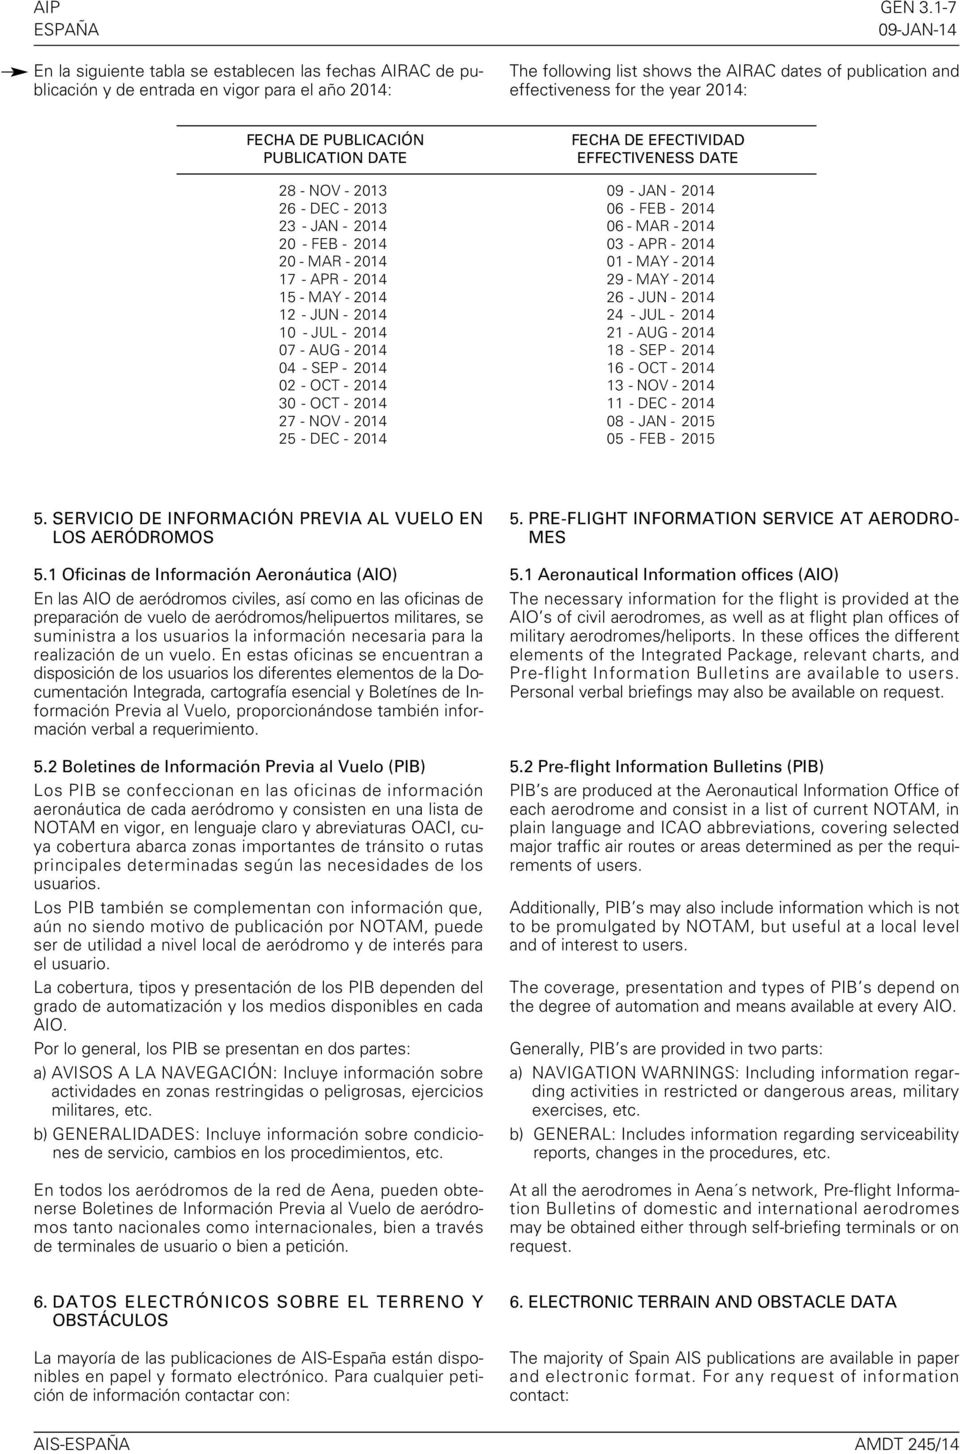 2014: FECHA DE PUBLICACIÓN PUBLICATION DATE FECHA DE EFECTIVIDAD EFFECTIVENESS DATE 28 - NOV - 2013 09 - JAN - 2014 26 - DEC - 2013 06 - FEB - 2014 23 - JAN - 2014 06 - MAR - 2014 20 - FEB - 2014 03